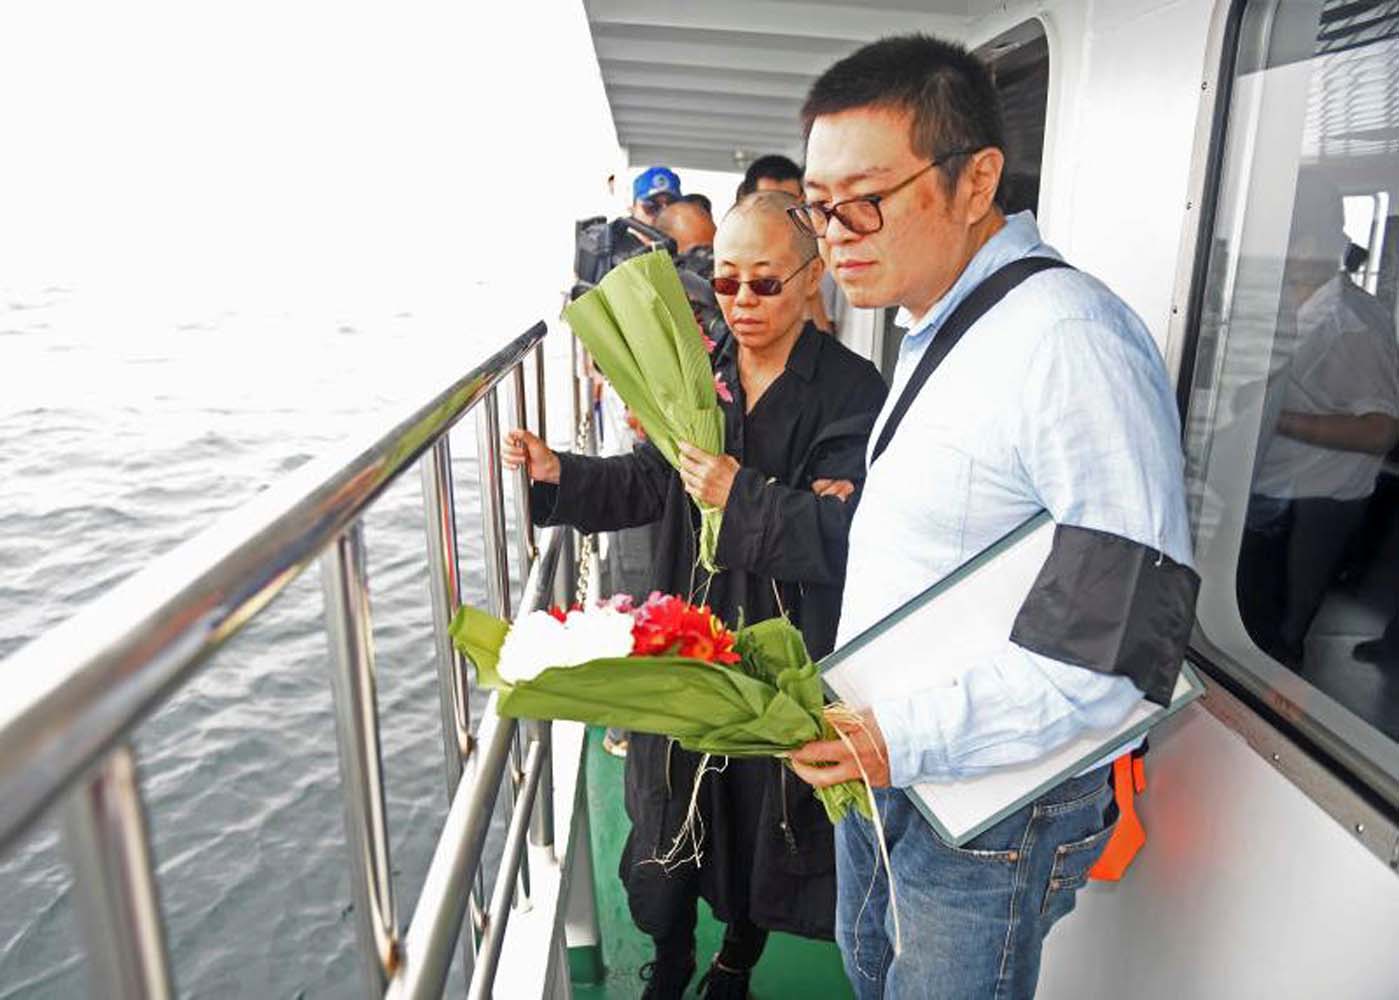 Las cenizas del disidente chino Liu Xiaobo fueron dispersadas en el mar